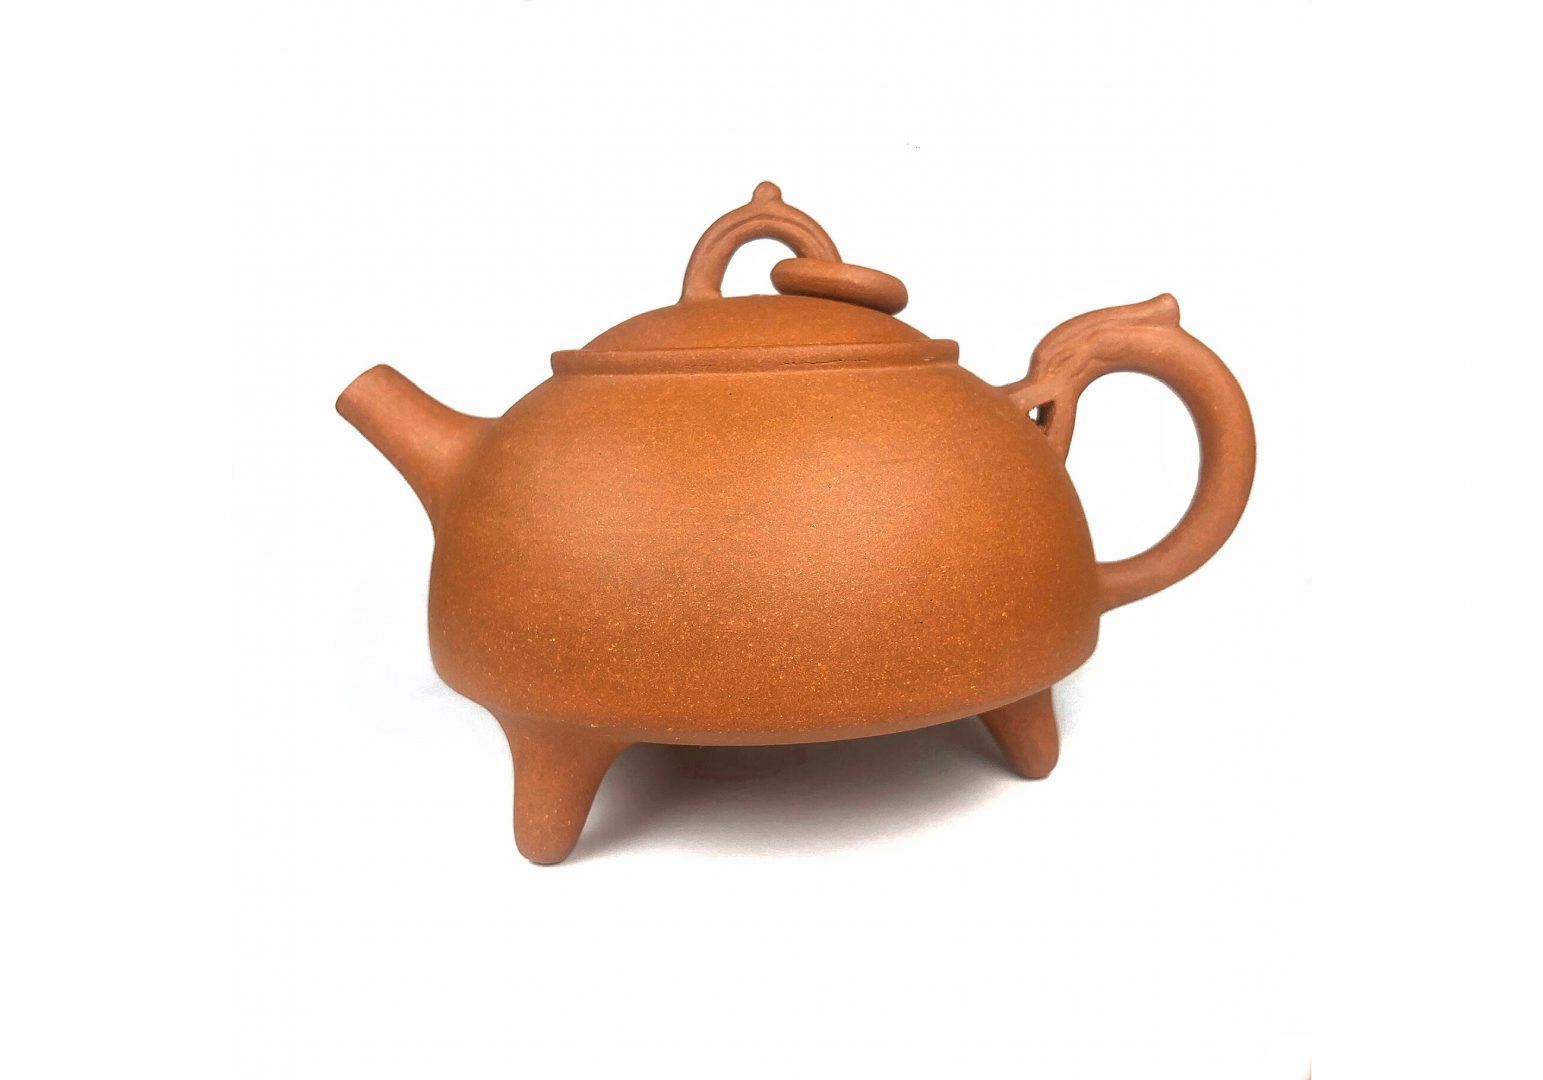 Исинский чайник. Первый заварочный чайник появился в китайском городе Исини. Его делали из пористой глины, которая хорошо удерживала тепло. Из-за особенностей глины формировался и вкус чая. Он был очень насыщенным. Фото: SHUTTERSTOCK